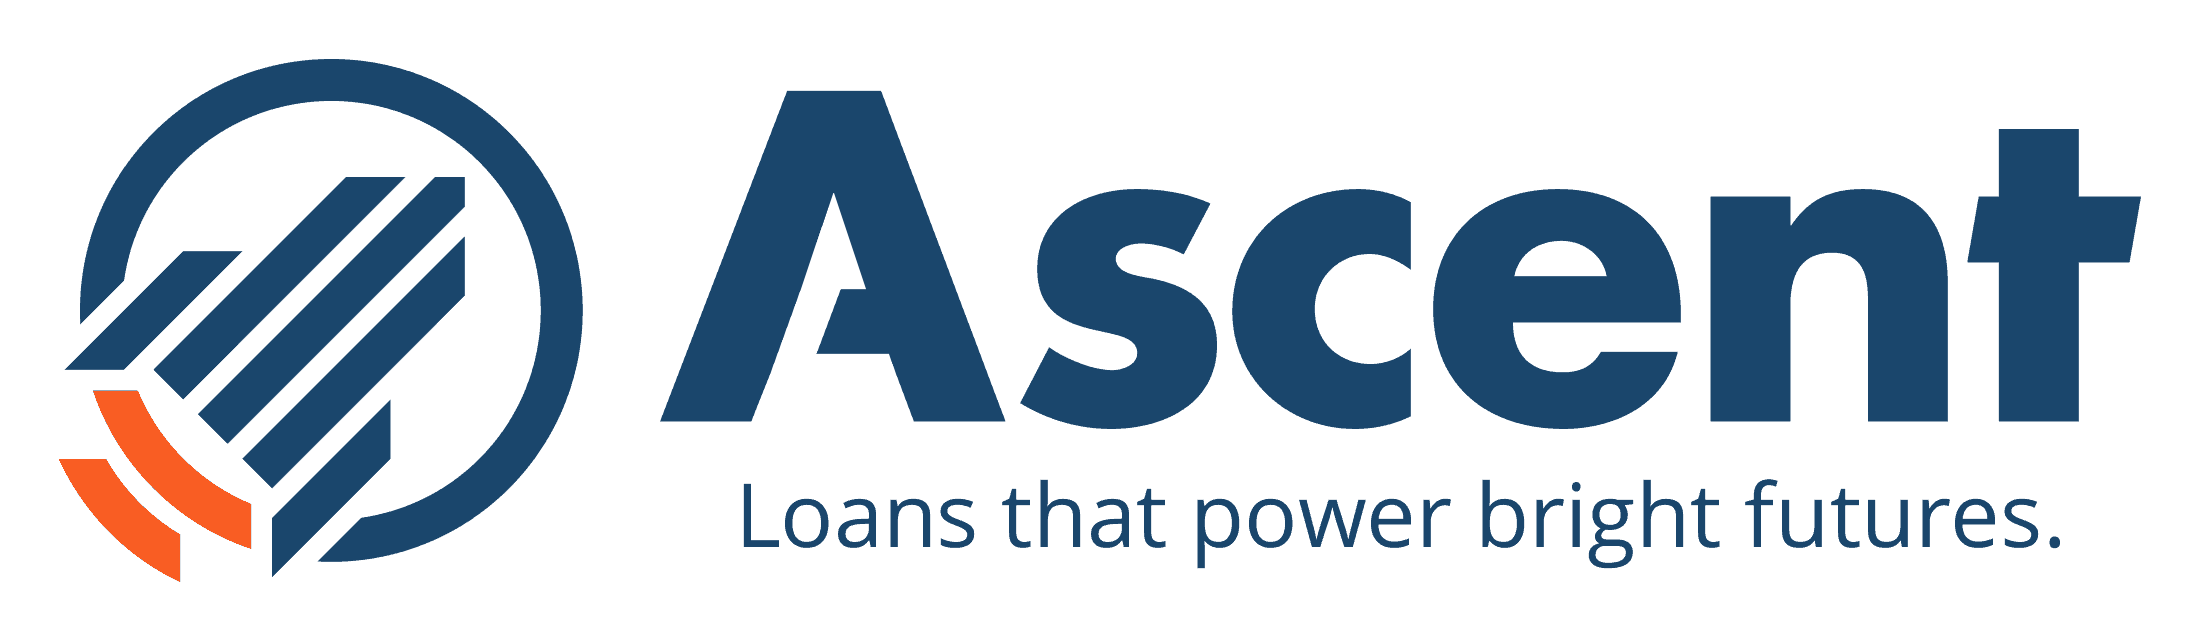 College Ave Private Student Loans Comparison: Ascent